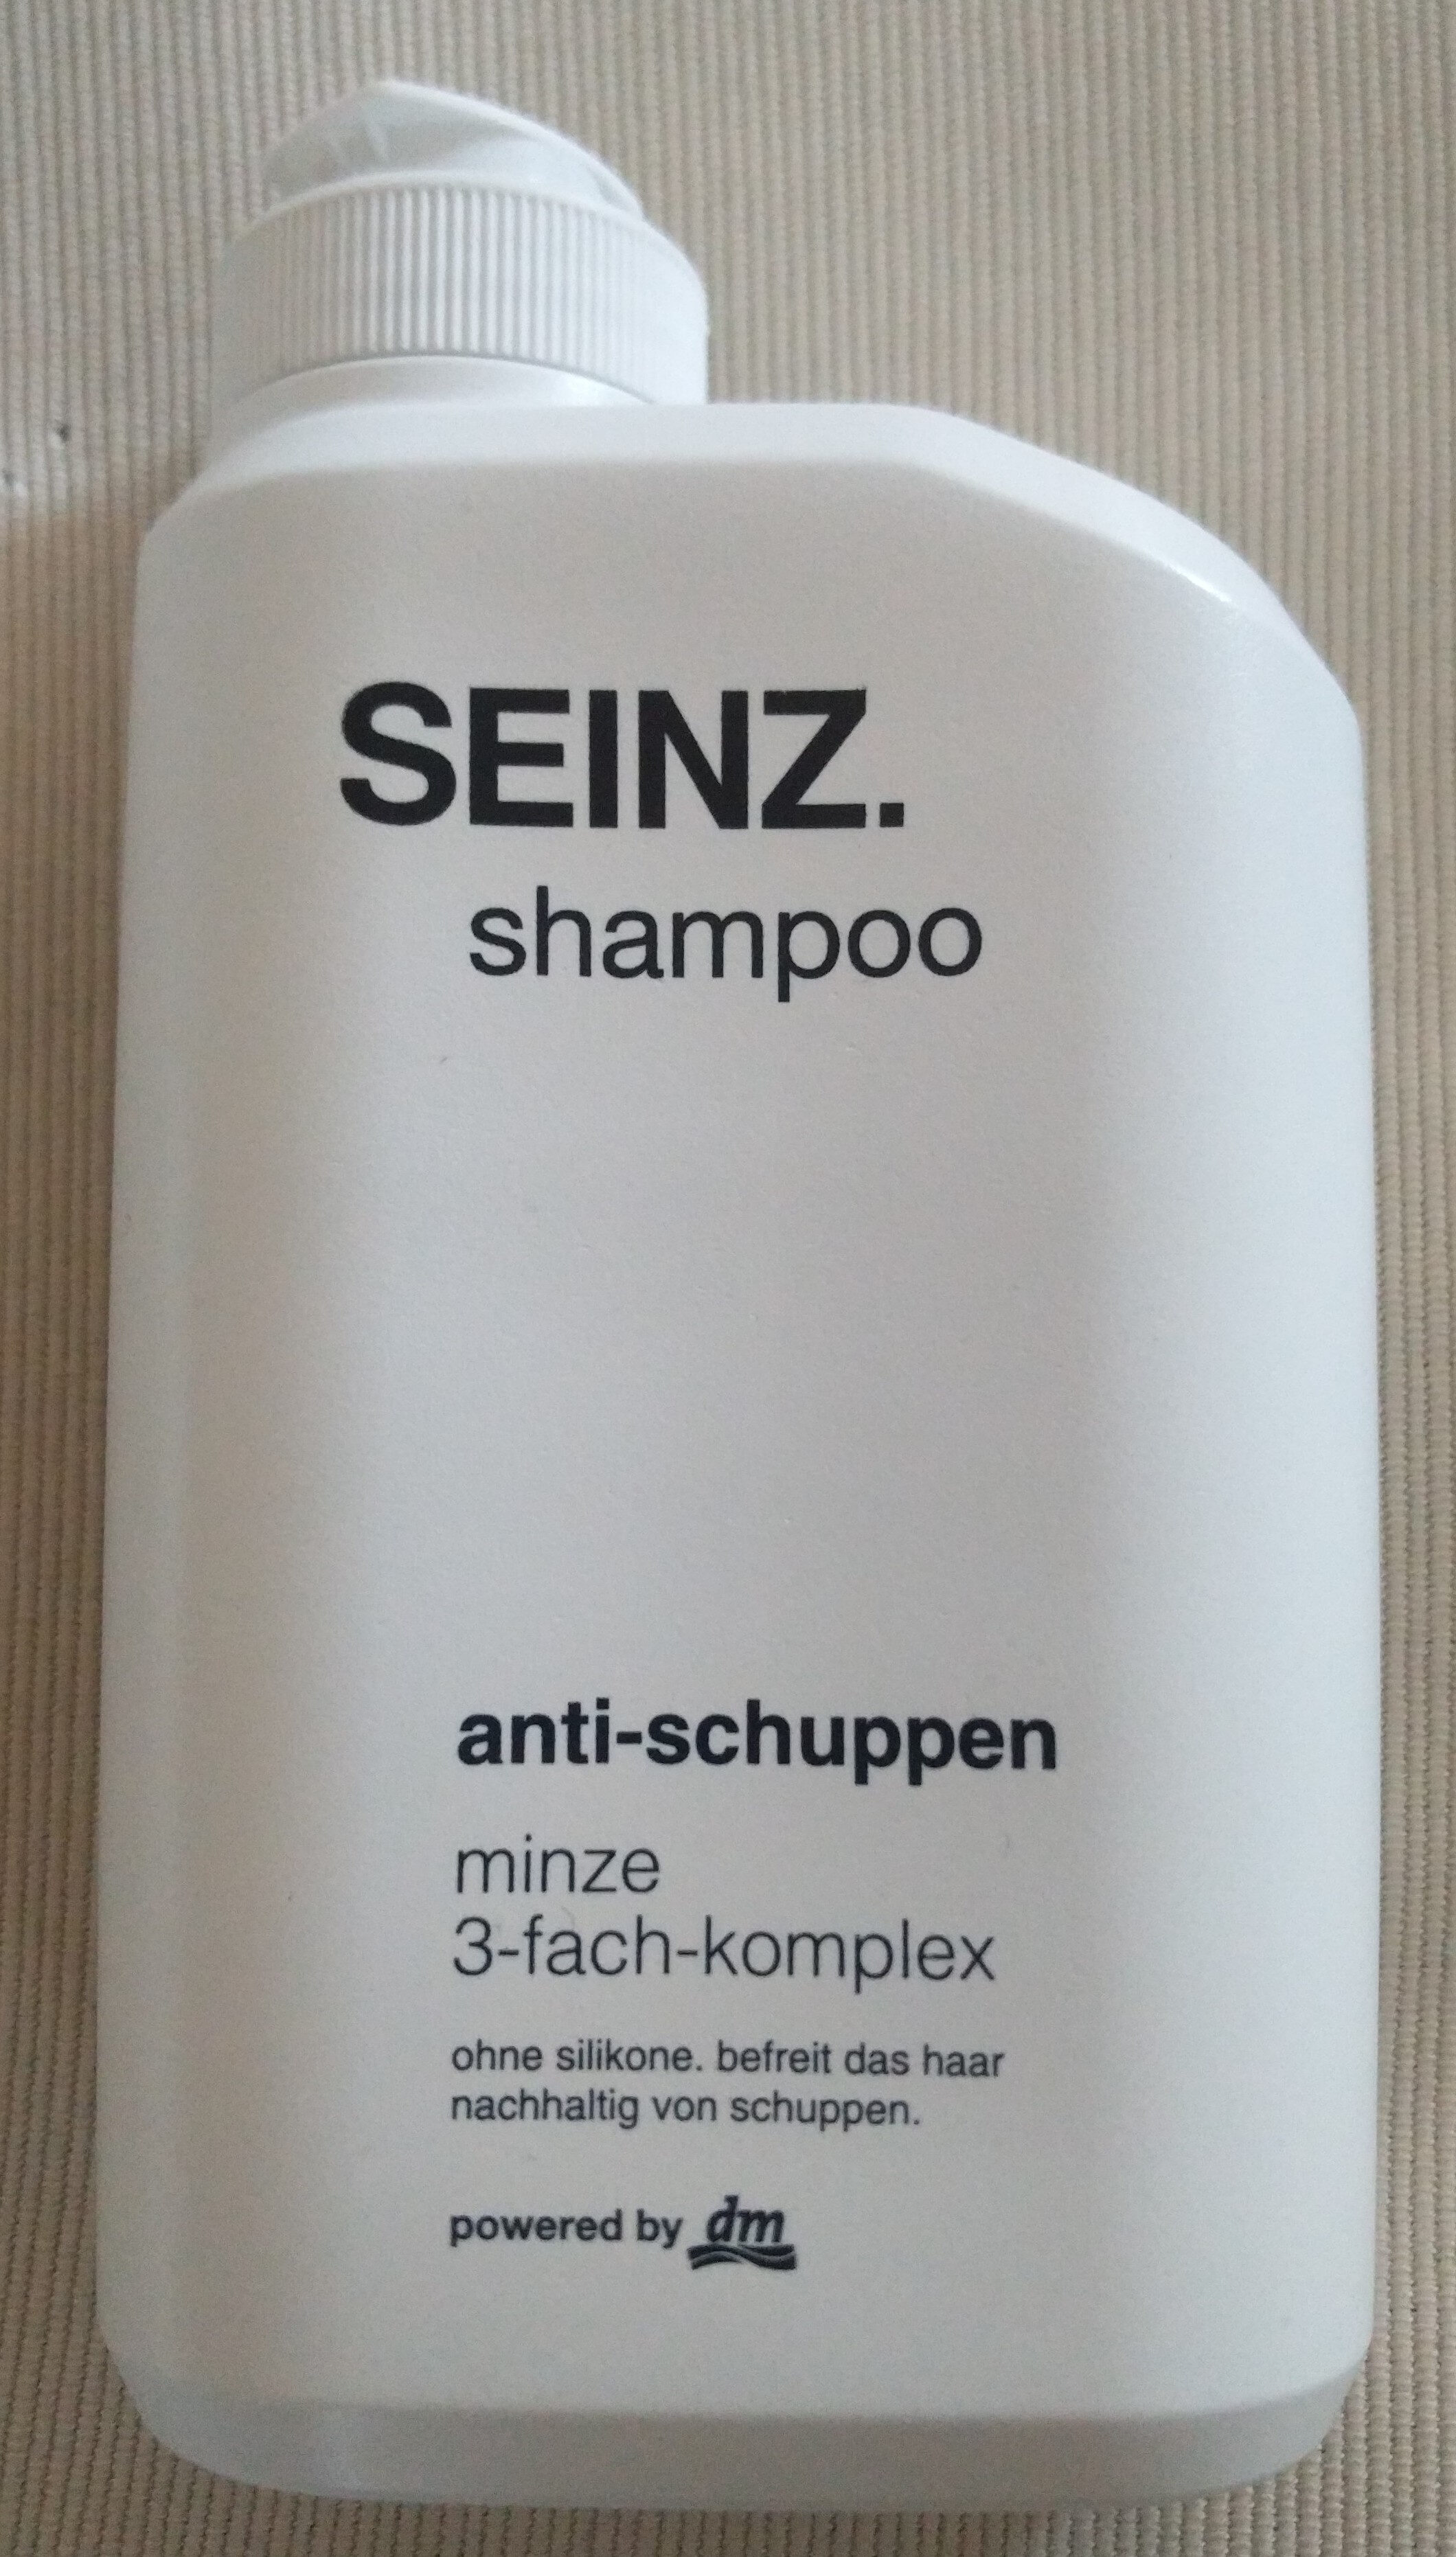 shampoo anti-schuppen (minze 3-fach-komplex) - Produkt - de